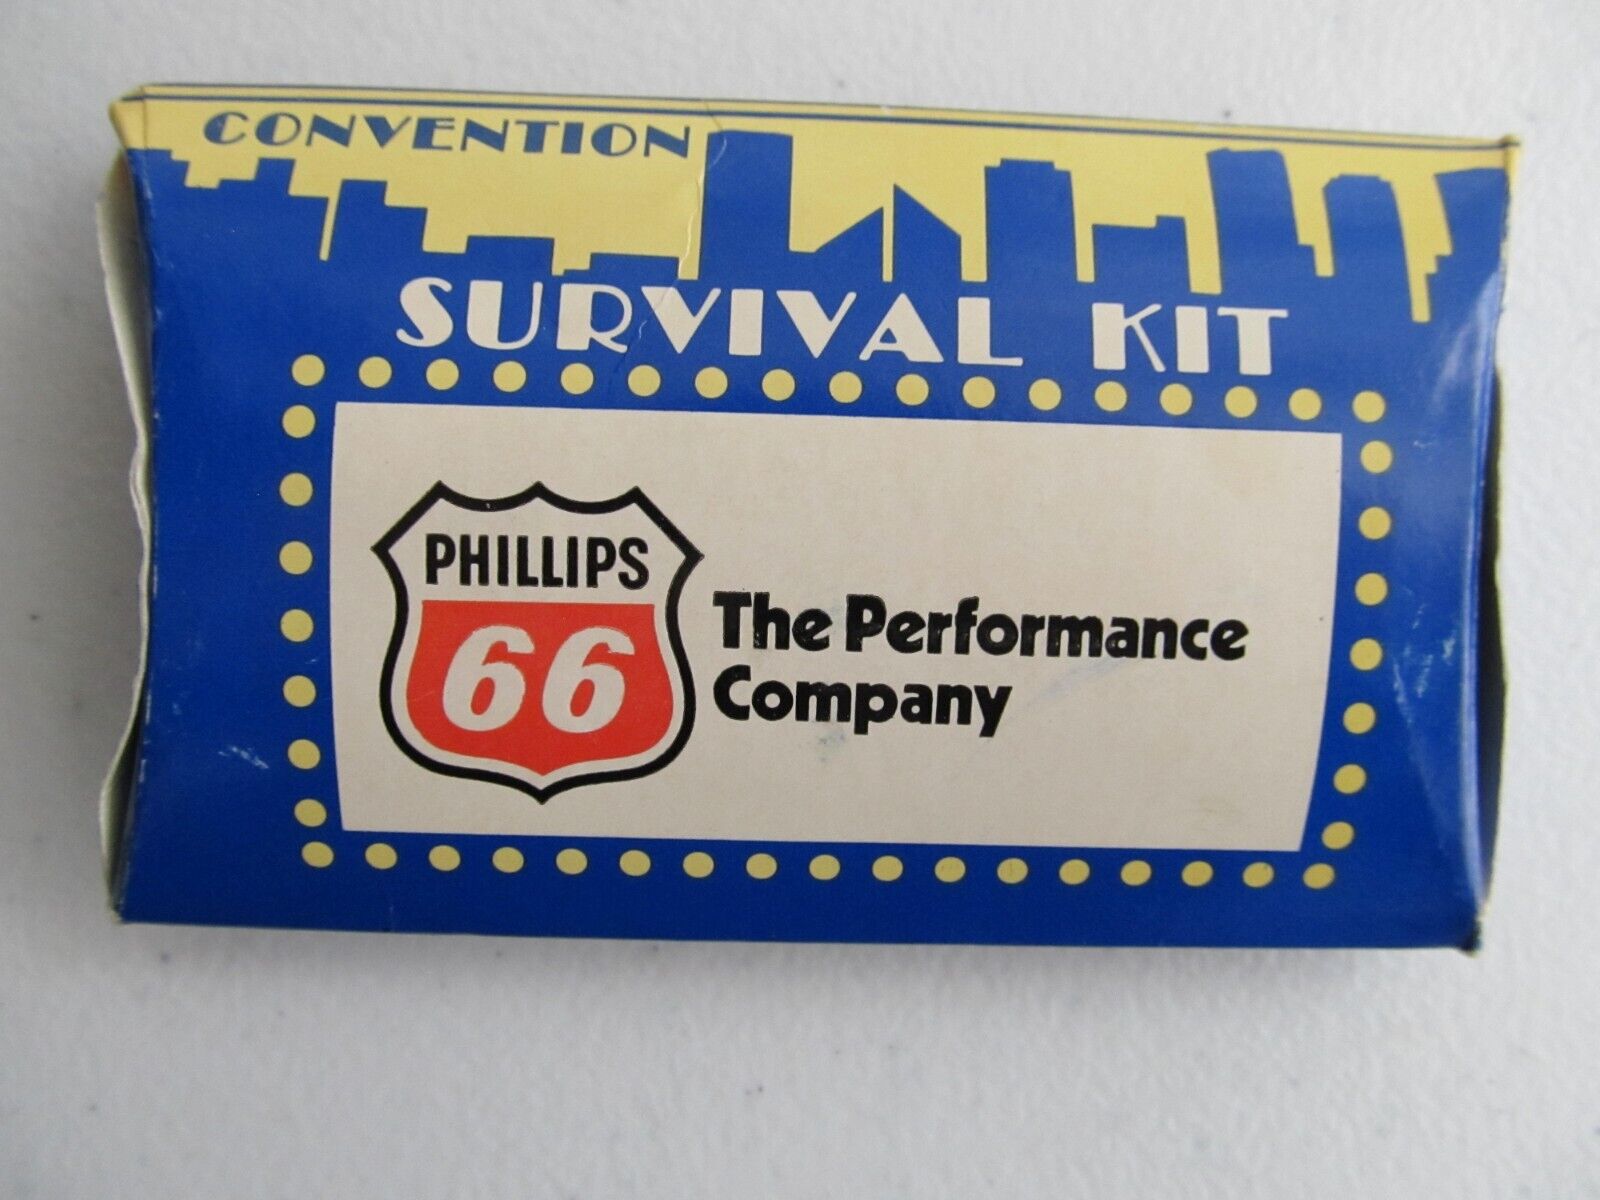 Vintage Phillips 66 Oil Convention Survival Kit, 1982